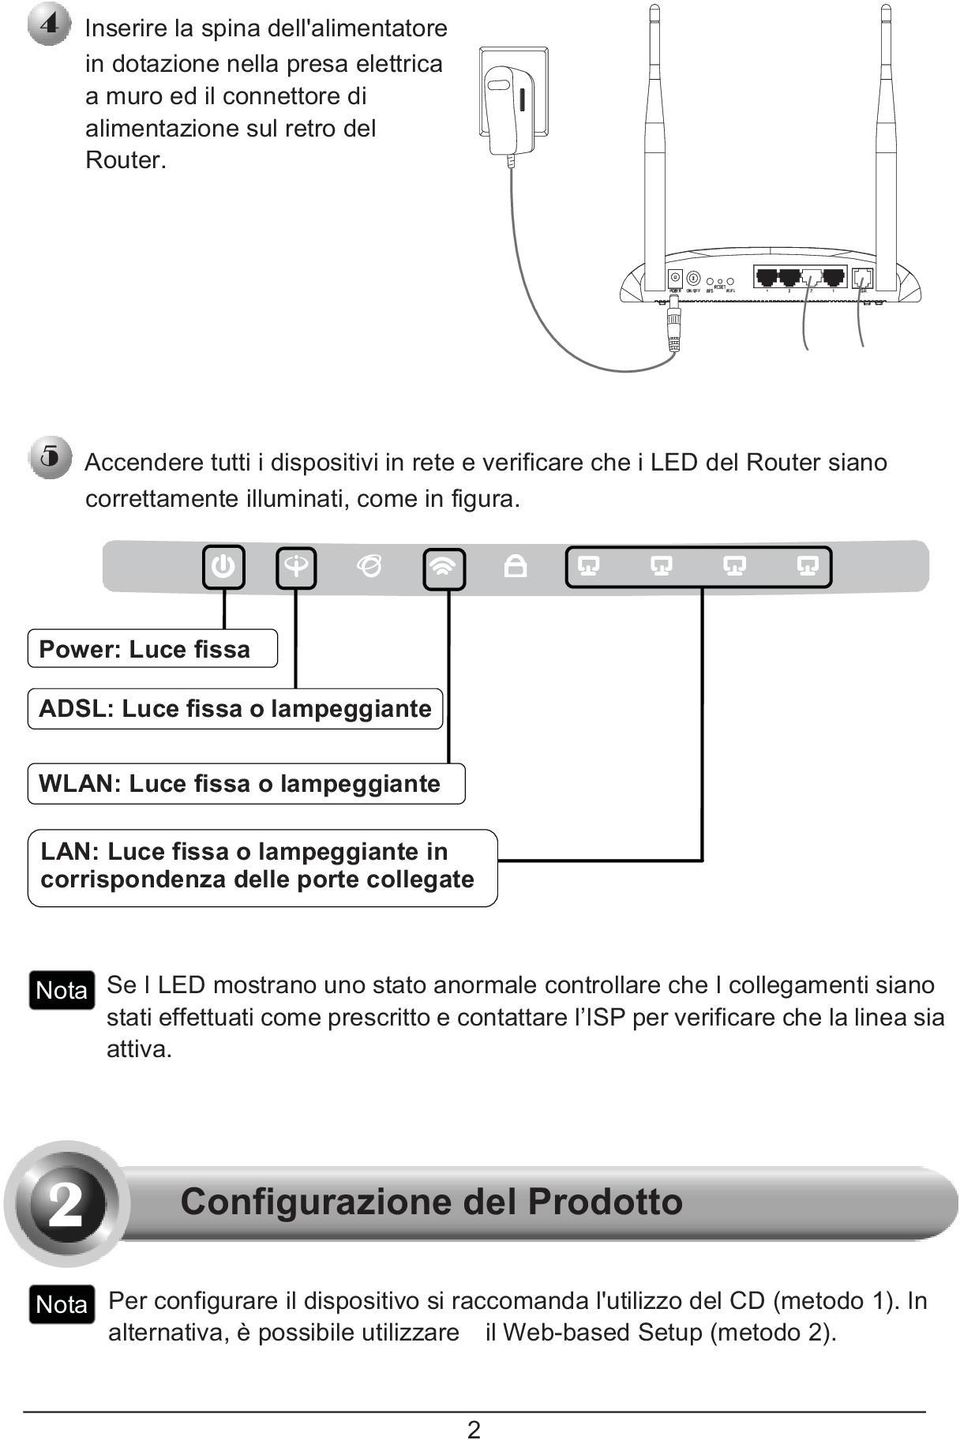 Power: Luce fissa ADSL: Luce fissa o lampeggiante WLAN: Luce fissa o lampeggiante LAN: Luce fissa o lampeggiante in corrispondenza delle porte collegate Se I LED mostrano uno stato